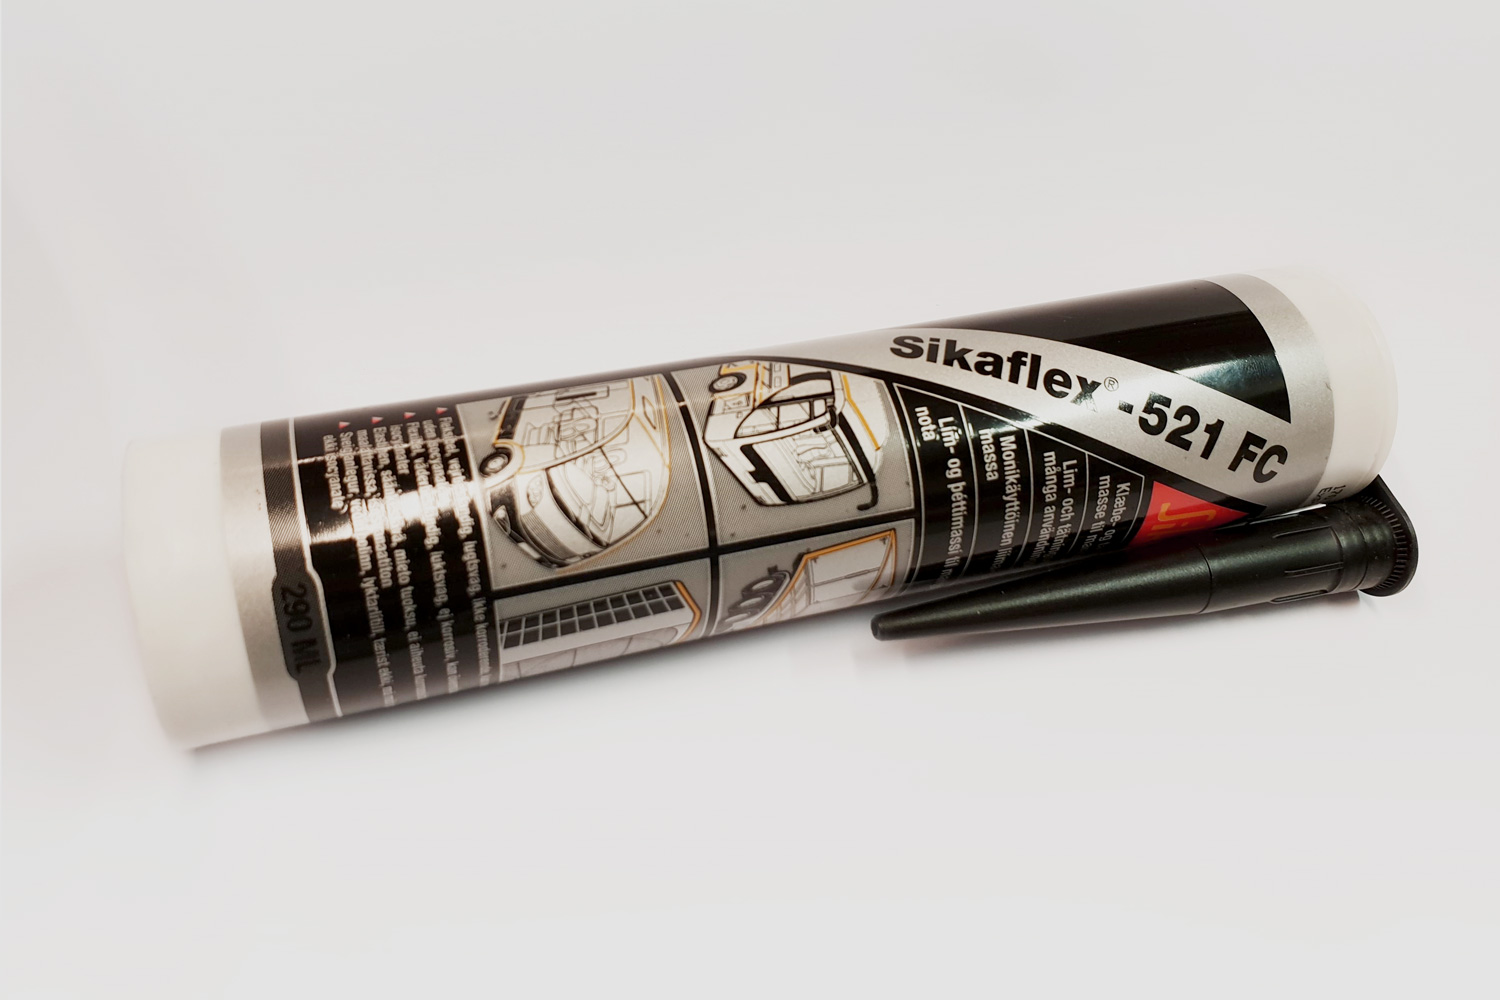 Sikaflex-521 FC